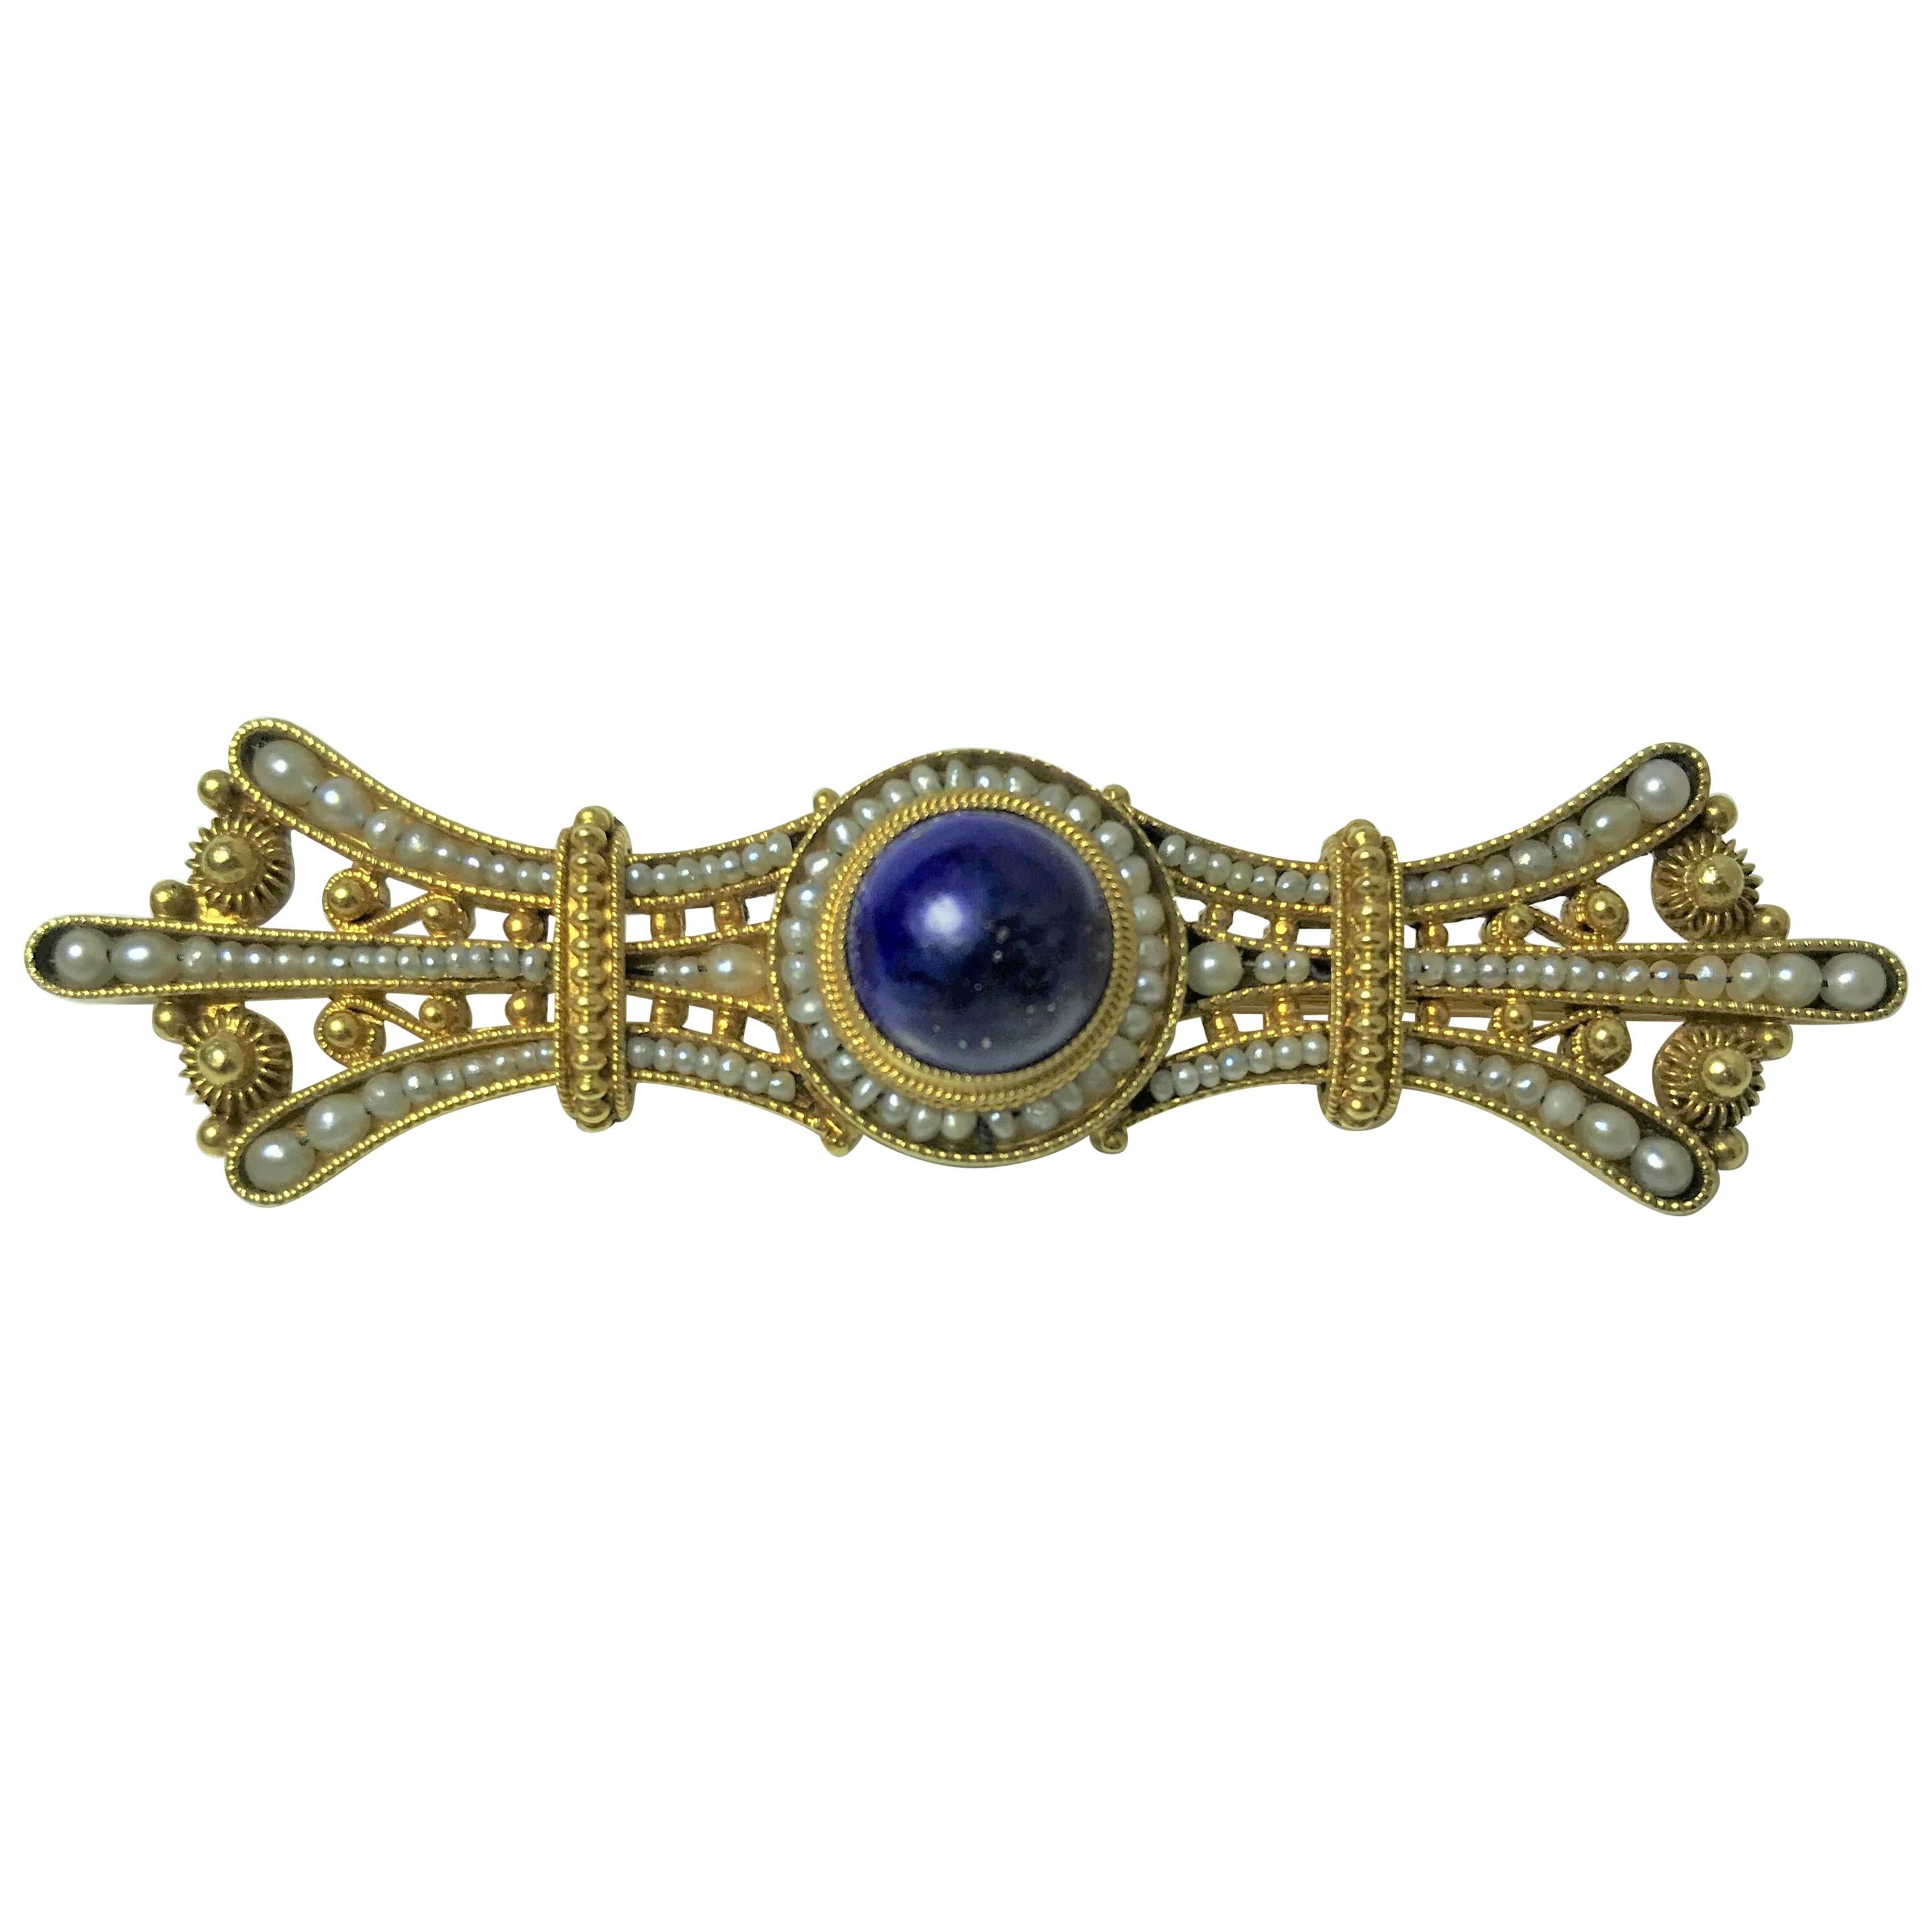 14 Karat Cabochon Lapis Lazuli Seed Pearl Brooch